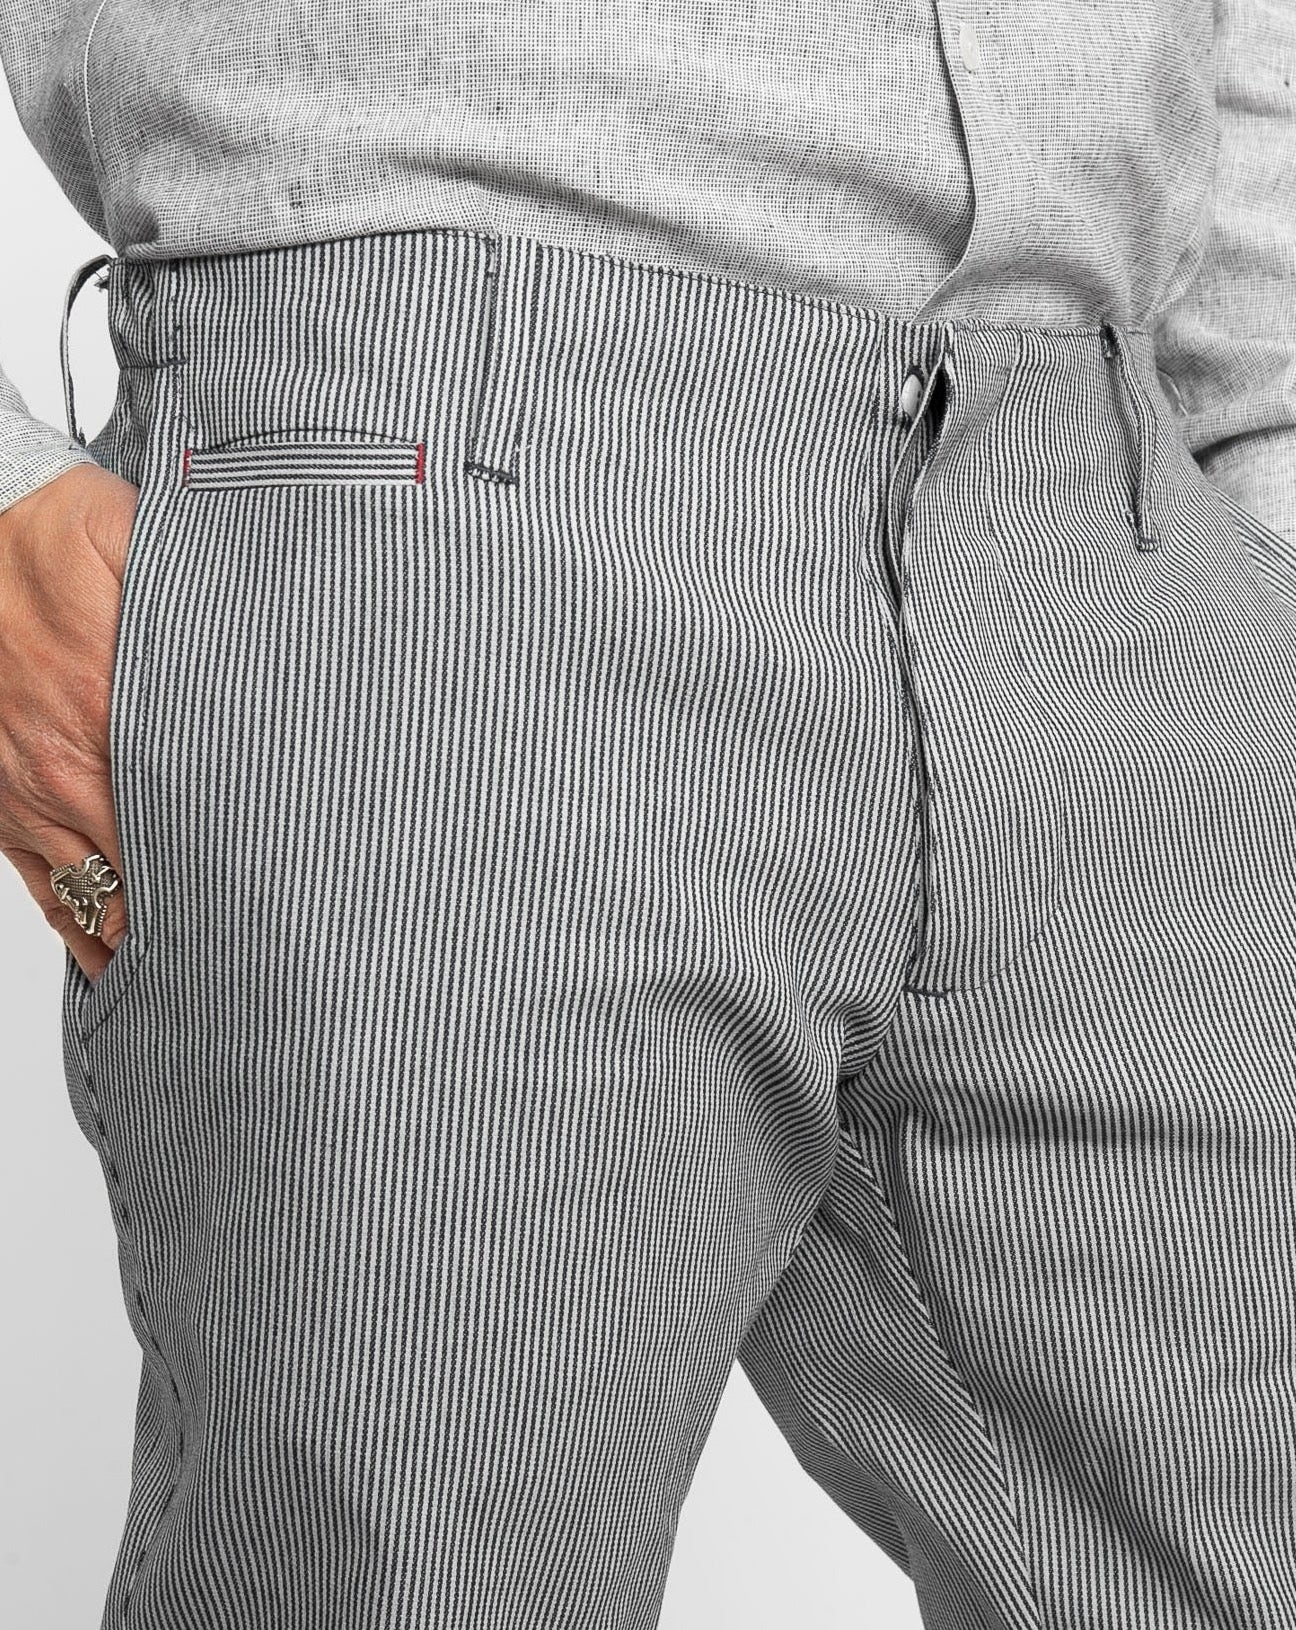 Signature Trouser | Denim Railway Stripe